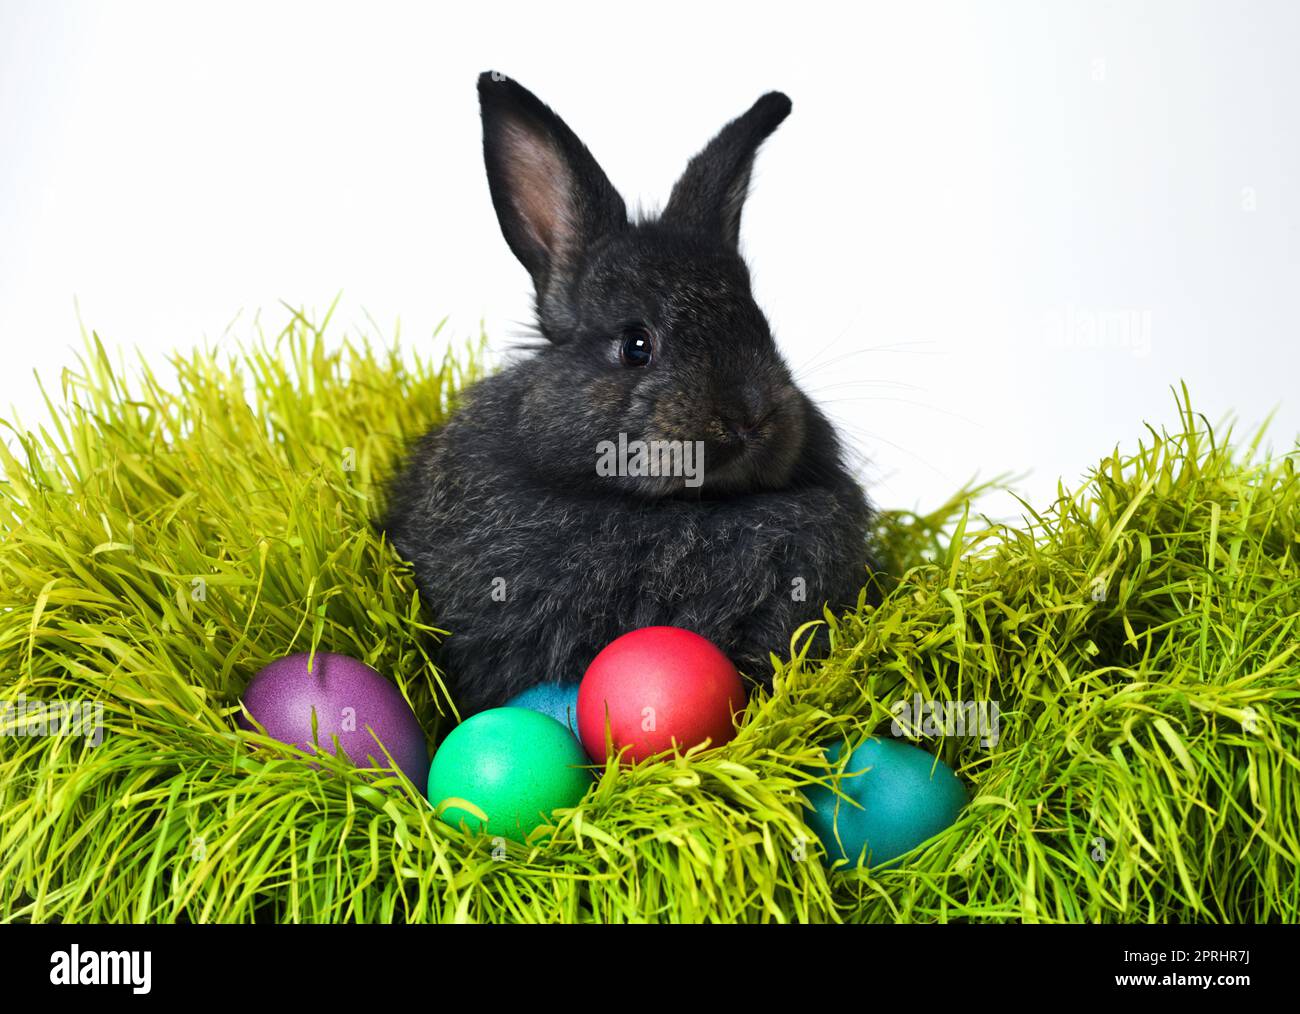 Nous étions tous de la famille ici. Photo en studio d'un joli lapin sur l'herbe avec un assortiment d'œufs aux couleurs vives Banque D'Images